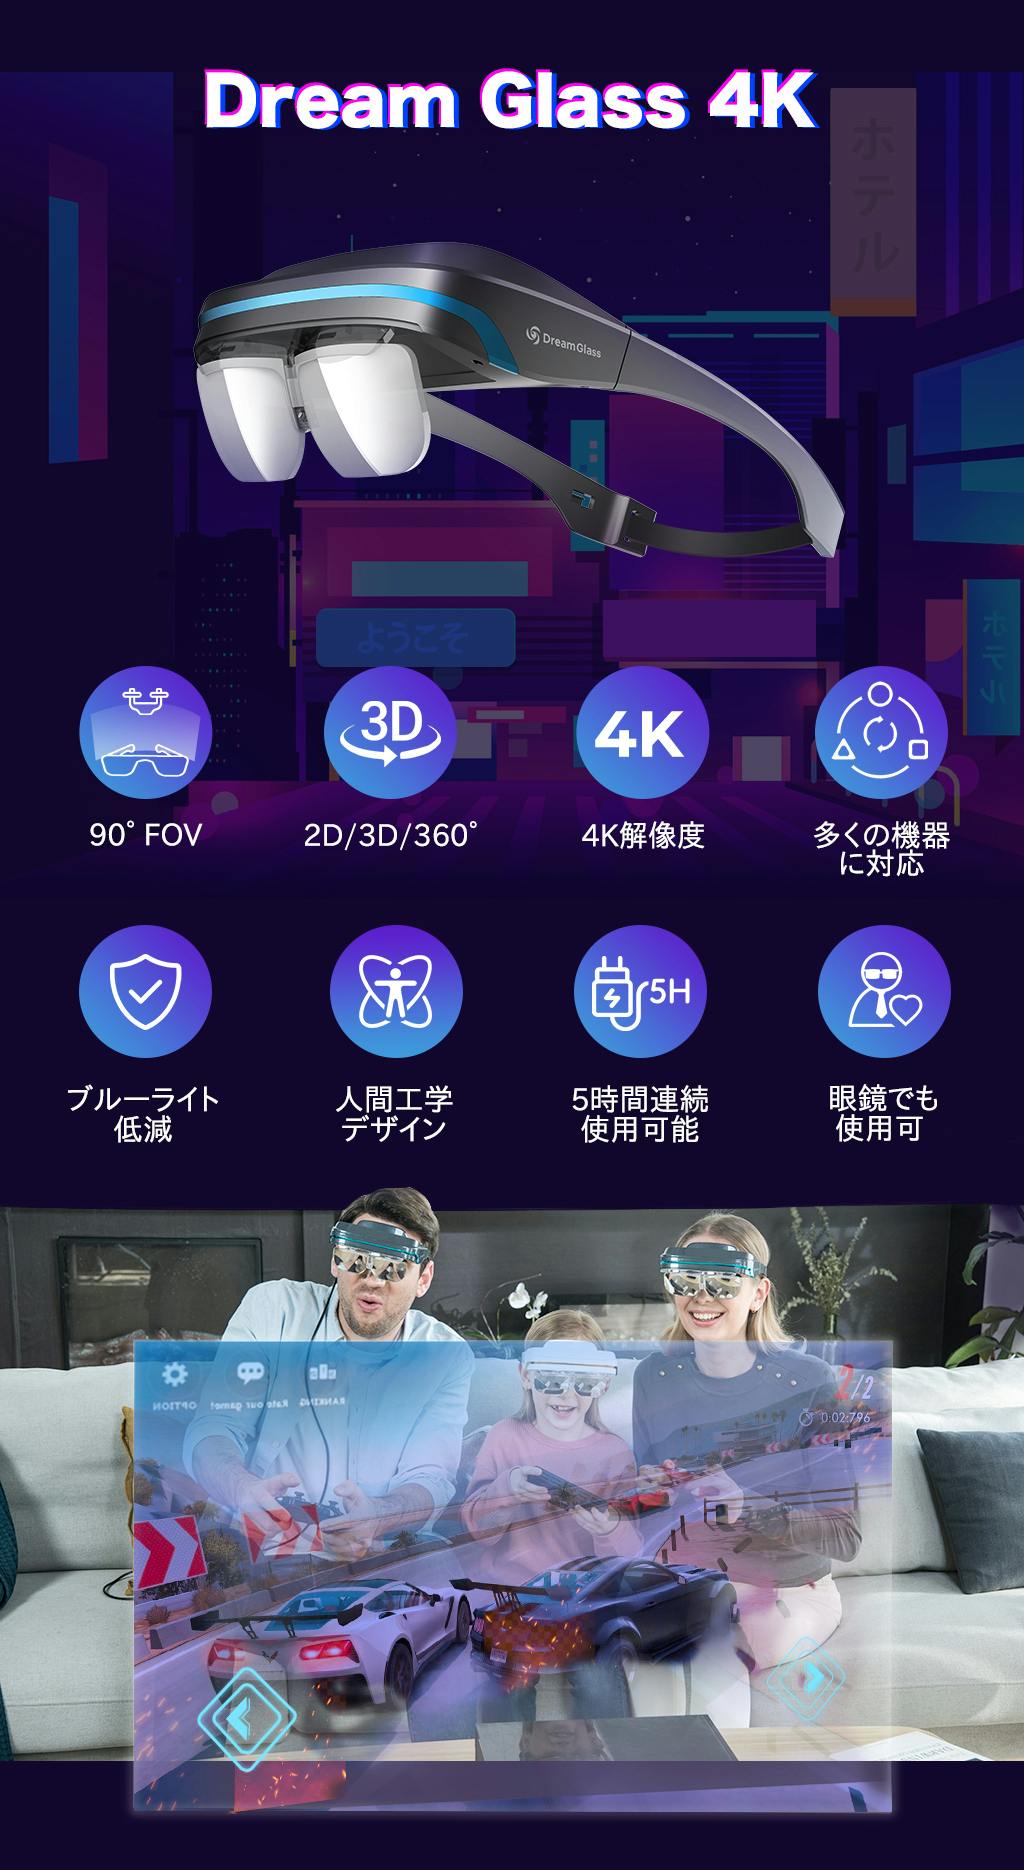 Dream Glass 4K-世界初のポータブル  プライベート AR グラス CAMPFIRE (キャンプファイヤー)